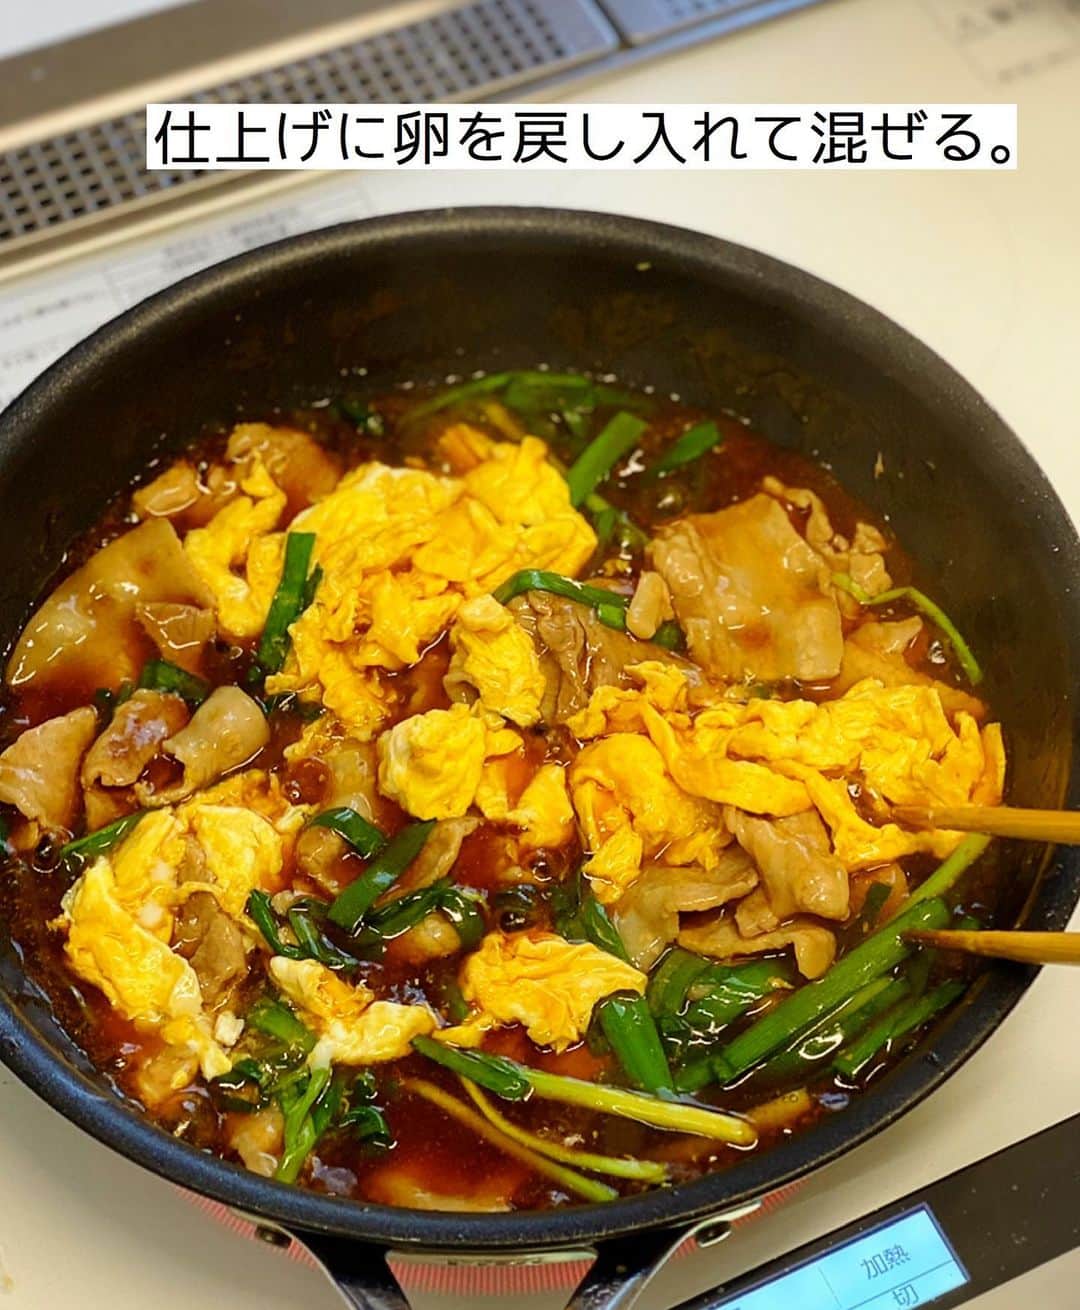 Mizuki【料理ブロガー・簡単レシピ】さんのインスタグラム写真 - (Mizuki【料理ブロガー・簡単レシピ】Instagram)「・﻿ 【#レシピ 】ーーーーーーーーー﻿ ♡豚ニラ卵のとろみあんかけ♡﻿ ーーーーーーーーーーーーーーー﻿ ﻿ ﻿ ﻿ おはようございます(*^^*)﻿ ﻿ 今日ご紹介させていただくのは﻿ \ 豚ニラ卵のとろみあんかけ /﻿ ﻿ しっかり味の中華あんで﻿ がっつりごはんがすすみますよ〜♩﻿ このままおかずにはもちろん﻿ 丼にするのもおすすめです♡﻿ ﻿ 作り方は超簡単(*´艸`)﻿ 味付けもとろみ付けも﻿ 合わせ調味料で失敗なし！﻿ コスパも抜群なので﻿ お気軽にお試し下さいね(*^^*)﻿ ﻿ ﻿ ﻿ ＿＿＿＿＿＿＿＿＿＿＿＿＿＿＿＿＿＿＿＿﻿ 【2人分】﻿ 豚バラ薄切り肉...180g﻿ ニラ...1/3束﻿ 卵...2個﻿ ごま油...大1﻿ ●水...150ml﻿ ●みりん・オイスターソース...各大1.5﻿ ●醤油・片栗粉...各小2﻿ ﻿ 1.豚肉とニラは4cm長さに切る。卵は溶きほぐす。●は合わせておく。﻿ 2.フライパンにごま油を強火で熱し、溶き卵を流し入れて大きく混ぜ、半熟になったら取り出しておく。﻿ 3.そのままのフライパンを中火で熱して豚肉を炒める。火が通ったらニラと●を加え、混ぜながらとろみをつけ、仕上げに2を戻し入れて混ぜる。﻿ ￣￣￣￣￣￣￣￣￣￣￣￣￣￣￣￣￣￣￣￣﻿ ﻿ ﻿ ﻿ ﻿ 《ポイント》﻿ ♦︎しっかりめの味付けです♩﻿ ♦︎豚こまで作っても◎﻿ ♦︎合わせ調味料はよく混ぜてから加えて下さい♩﻿ ﻿ ﻿ ﻿ ﻿ ﻿ ﻿ ﻿ 📕新刊発売中📕﻿ 【ラクしておいしい！#1品晩ごはん 】﻿ ￣￣￣￣￣￣￣￣￣￣￣￣￣￣￣￣￣﻿ 私たちだってヘトヘトな日がある•••﻿ 毎日何品も作っていられない•••﻿ もうごはんに悩みたくない😢﻿ そんな時、1品ごはんはいかがでしょう？﻿ というご提案です✨﻿ ﻿ 【1品ごはん】は﻿ 副菜いらずで全てがシンプル！﻿ ￣￣￣￣￣￣￣￣￣￣￣￣￣￣￣￣￣￣﻿ 一品つくるだけでいいから﻿ 献立を考えなくてよし！﻿ ￣￣￣￣￣￣￣￣￣￣￣￣￣￣￣￣￣￣﻿ 悩まない、疲れない、﻿ 気力や時間がなくてもなんとかなる！﻿ ￣￣￣￣￣￣￣￣￣￣￣￣￣￣￣￣￣￣﻿ そんな頼りになる﻿ 便利なお助けごはんです☺️💕﻿ (ハイライトに🔗貼っています✨)﻿ ￣￣￣￣￣￣￣￣￣￣￣￣￣￣￣￣￣﻿ ﻿ ﻿ ﻿ ﻿ ﻿ ⭐️発売中⭐️﻿ ＿＿＿＿＿＿＿＿＿＿＿＿＿＿＿＿＿＿﻿ しんどくない献立、考えました♩﻿ \15分でいただきます/﻿ 📕#Mizukiの2品献立 📕﻿ ﻿ 和食をもっとカジュアルに♩﻿ \毎日のごはんがラクになる/﻿ 📘#Mizukiの今どき和食 📘﻿ ﻿ ホケミレシピの決定版♩﻿ \はじめてでも失敗しない/﻿ 📙#ホットケーキミックスのお菓子 📙﻿ ﻿ NHKまる得マガジンテキスト☆﻿ ホットケーキミックスで﻿ 📗絶品おやつ&意外なランチ📗﻿ ￣￣￣￣￣￣￣￣￣￣￣￣￣￣￣￣￣￣﻿ ﻿ ﻿ ﻿ ＿＿＿＿＿＿＿＿＿＿＿＿＿＿＿＿＿＿﻿ レシピを作って下さった際や﻿ レシピ本についてのご投稿には﻿ タグ付け( @mizuki_31cafe )して﻿ お知らせいただけると嬉しいです😊💕﻿ ￣￣￣￣￣￣￣￣￣￣￣￣￣￣￣￣￣￣﻿ ﻿ ﻿ ﻿ ﻿ #豚肉#ニラ#卵#あんかけ#Mizuki#簡単レシピ#時短レシピ#節約レシピ#料理#フーディーテーブル#マカロニメイト#おうちごはん#デリスタグラマー#料理好きな人と繋がりたい#おうちごはんlover#写真好きな人と繋がりたい#foodpic#cooking#recipe#lin_stagrammer#foodporn#yummy#f52grams#豚ニラ卵のとろみあんかけm」1月12日 6時56分 - mizuki_31cafe